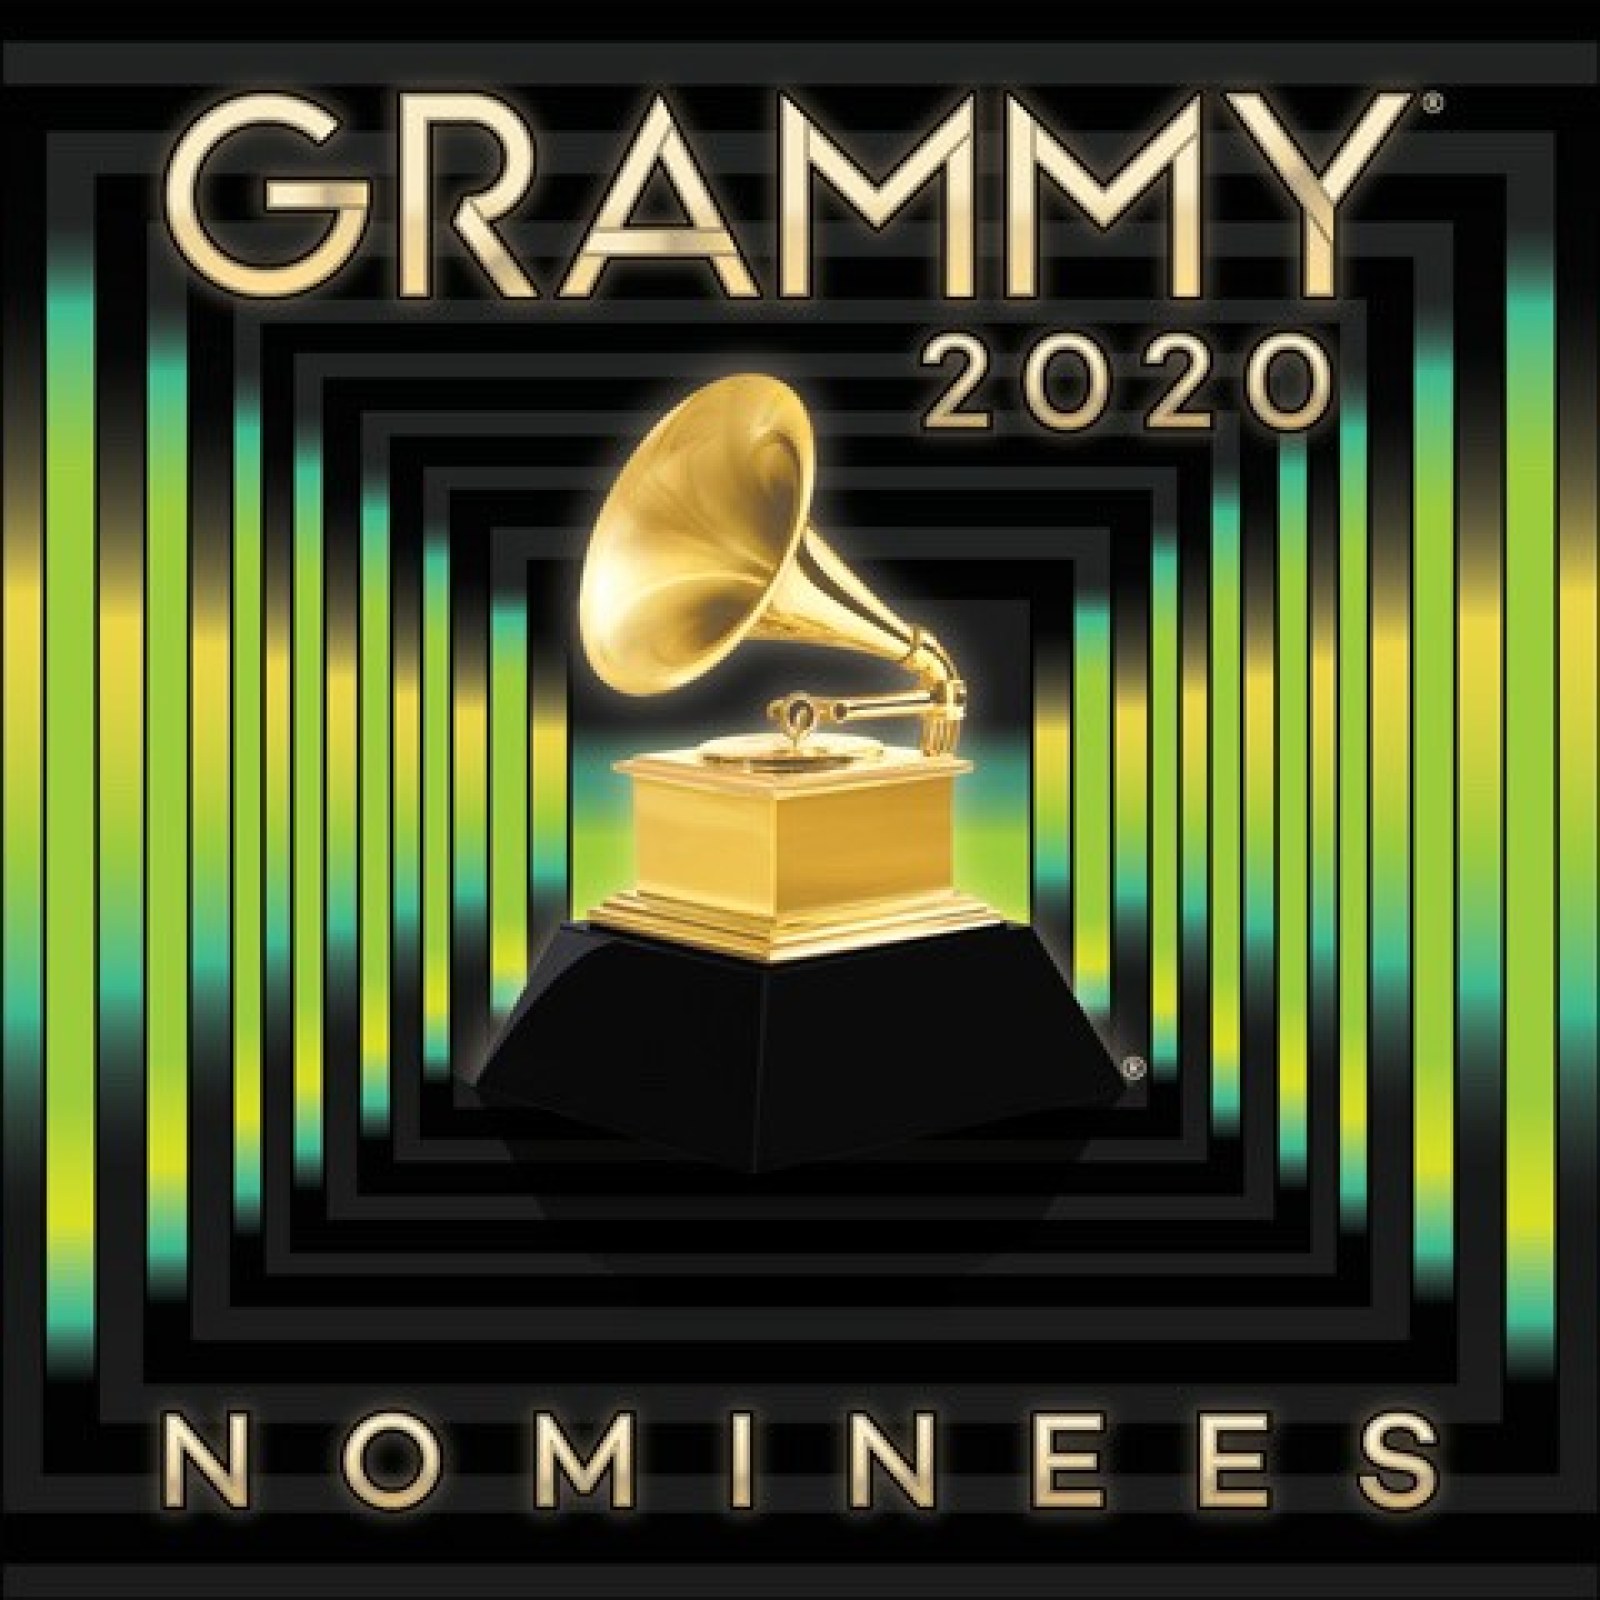 grammy-nominees-2020.jpg?w=1600&h=1600&q=88&f=a95c23a625a7a1fe2938d28e66383f6f